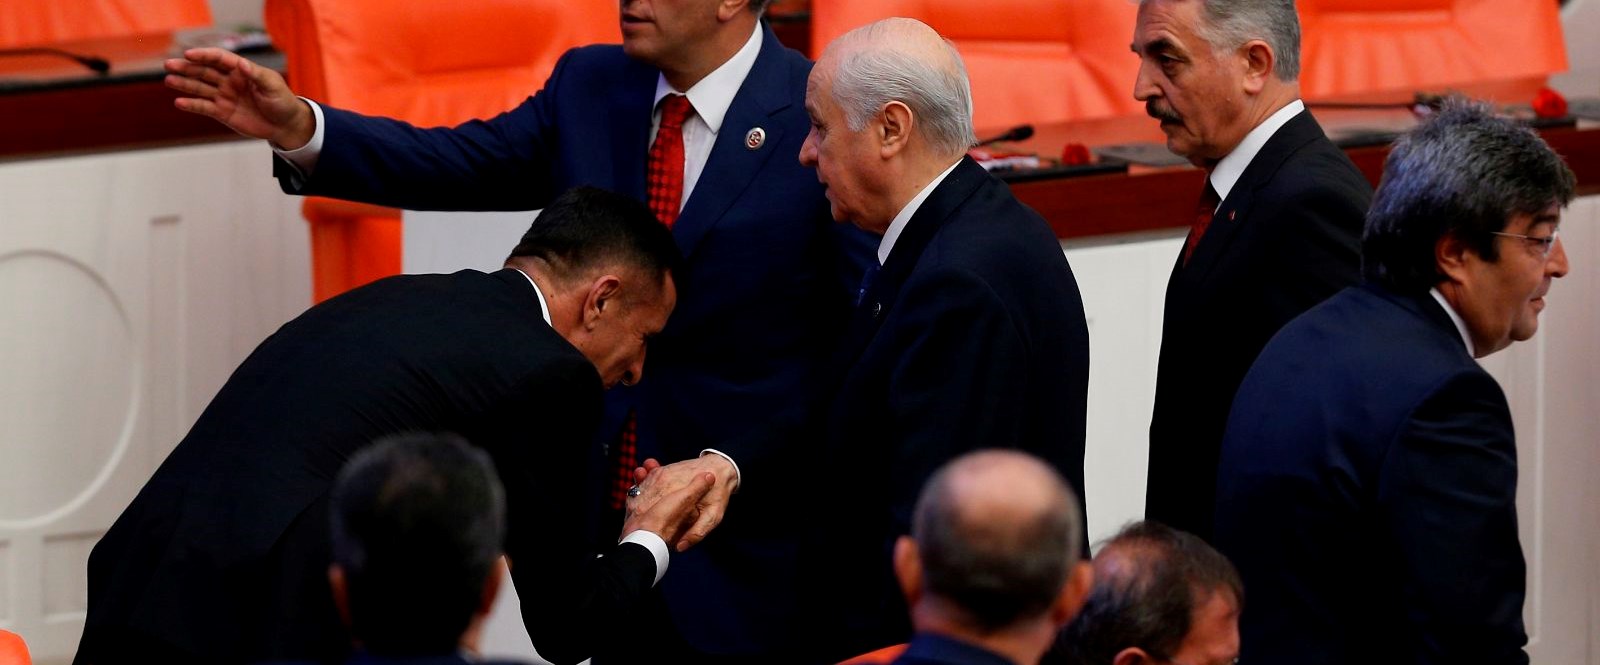 İYİ Parti milletvekili Bahçeli’nin elini öptü